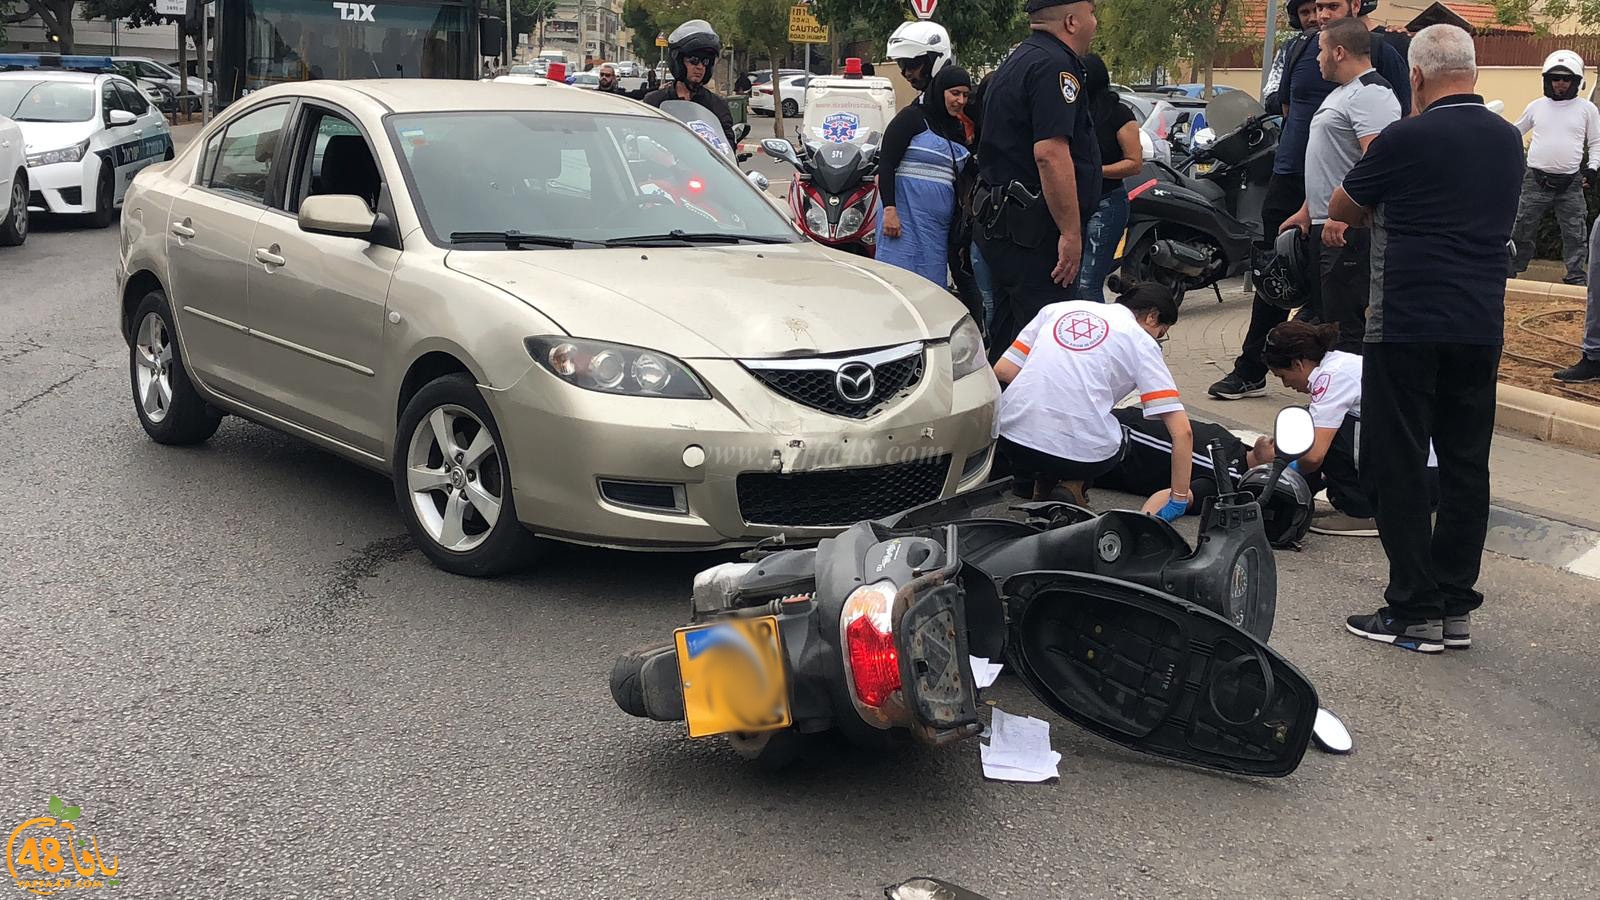  بالصور: اصابة متوسطة لراكب دراجة نارية بحادث طرق في يافا